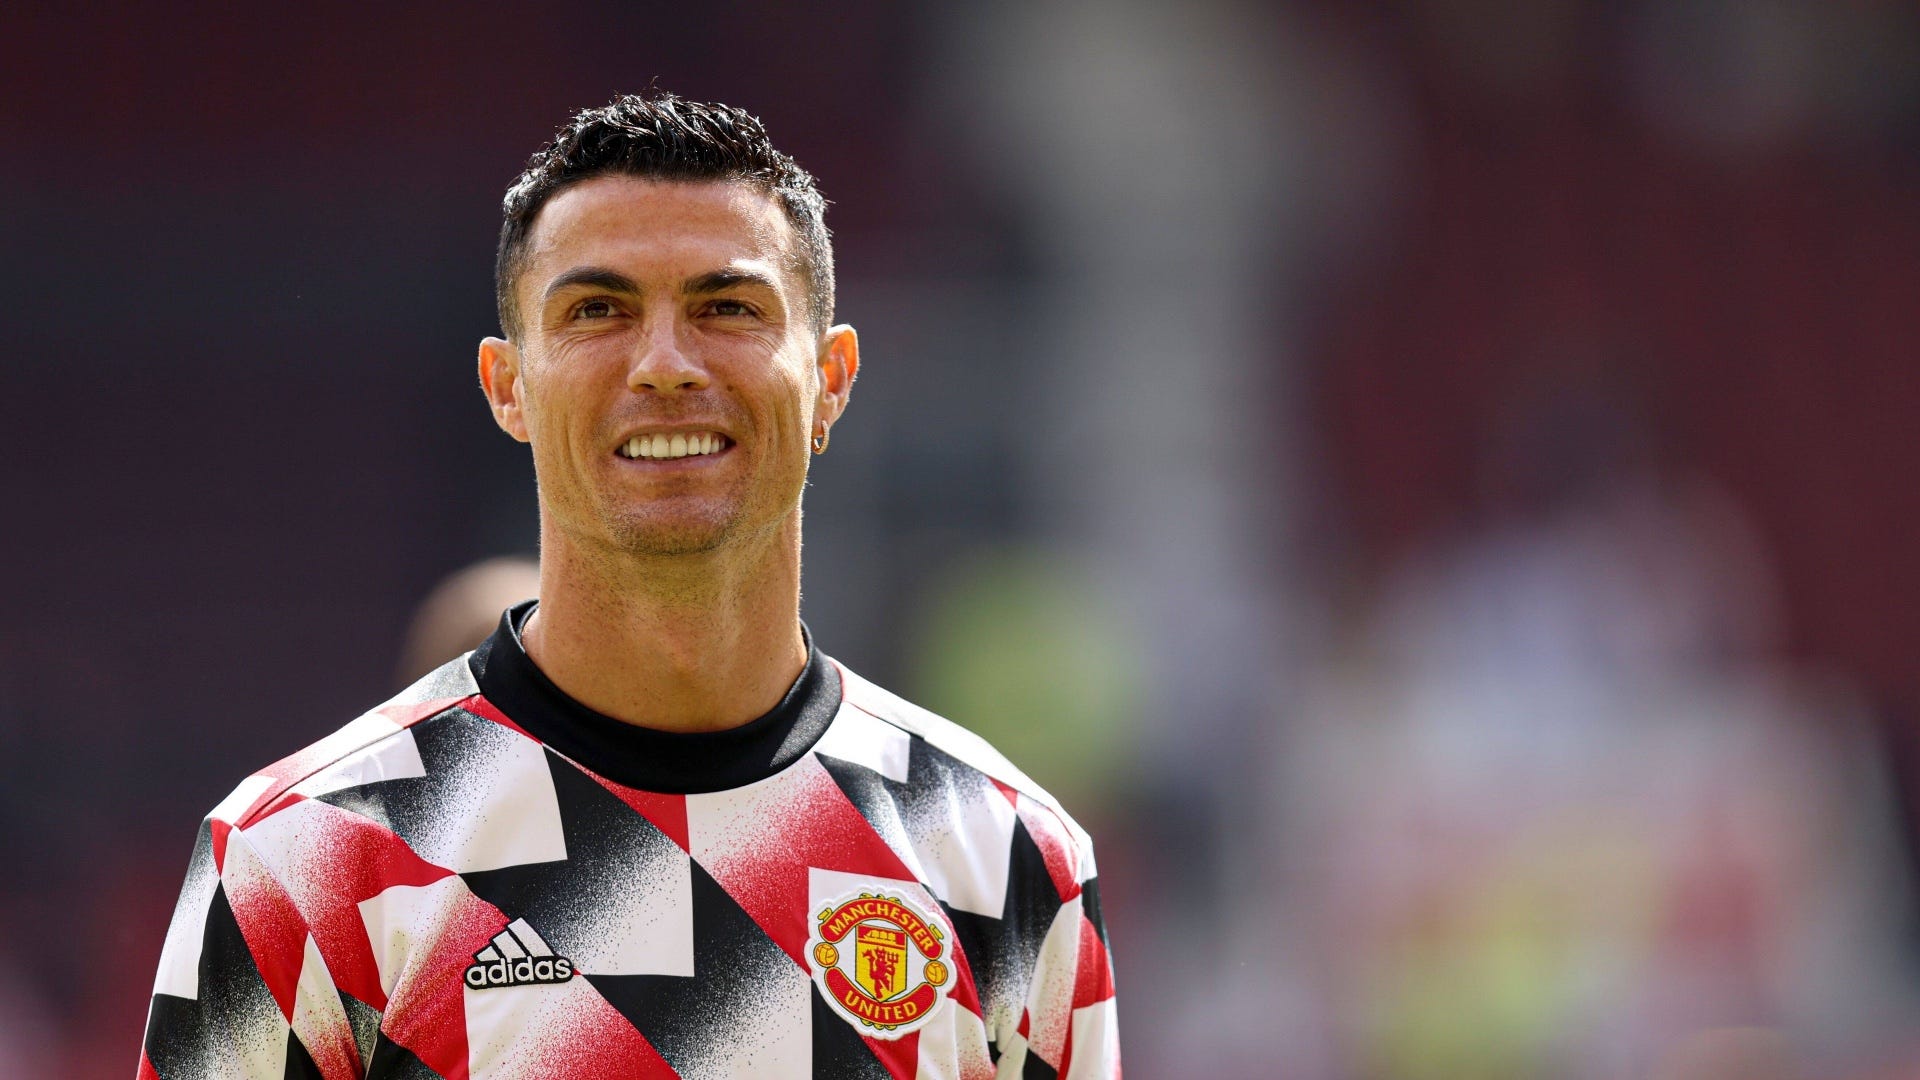 Cristiano Ronaldo zu Fenerbahce? Jorge Jesus spricht über möglichen Transfer des United-Stars | Goal.com Deutschland